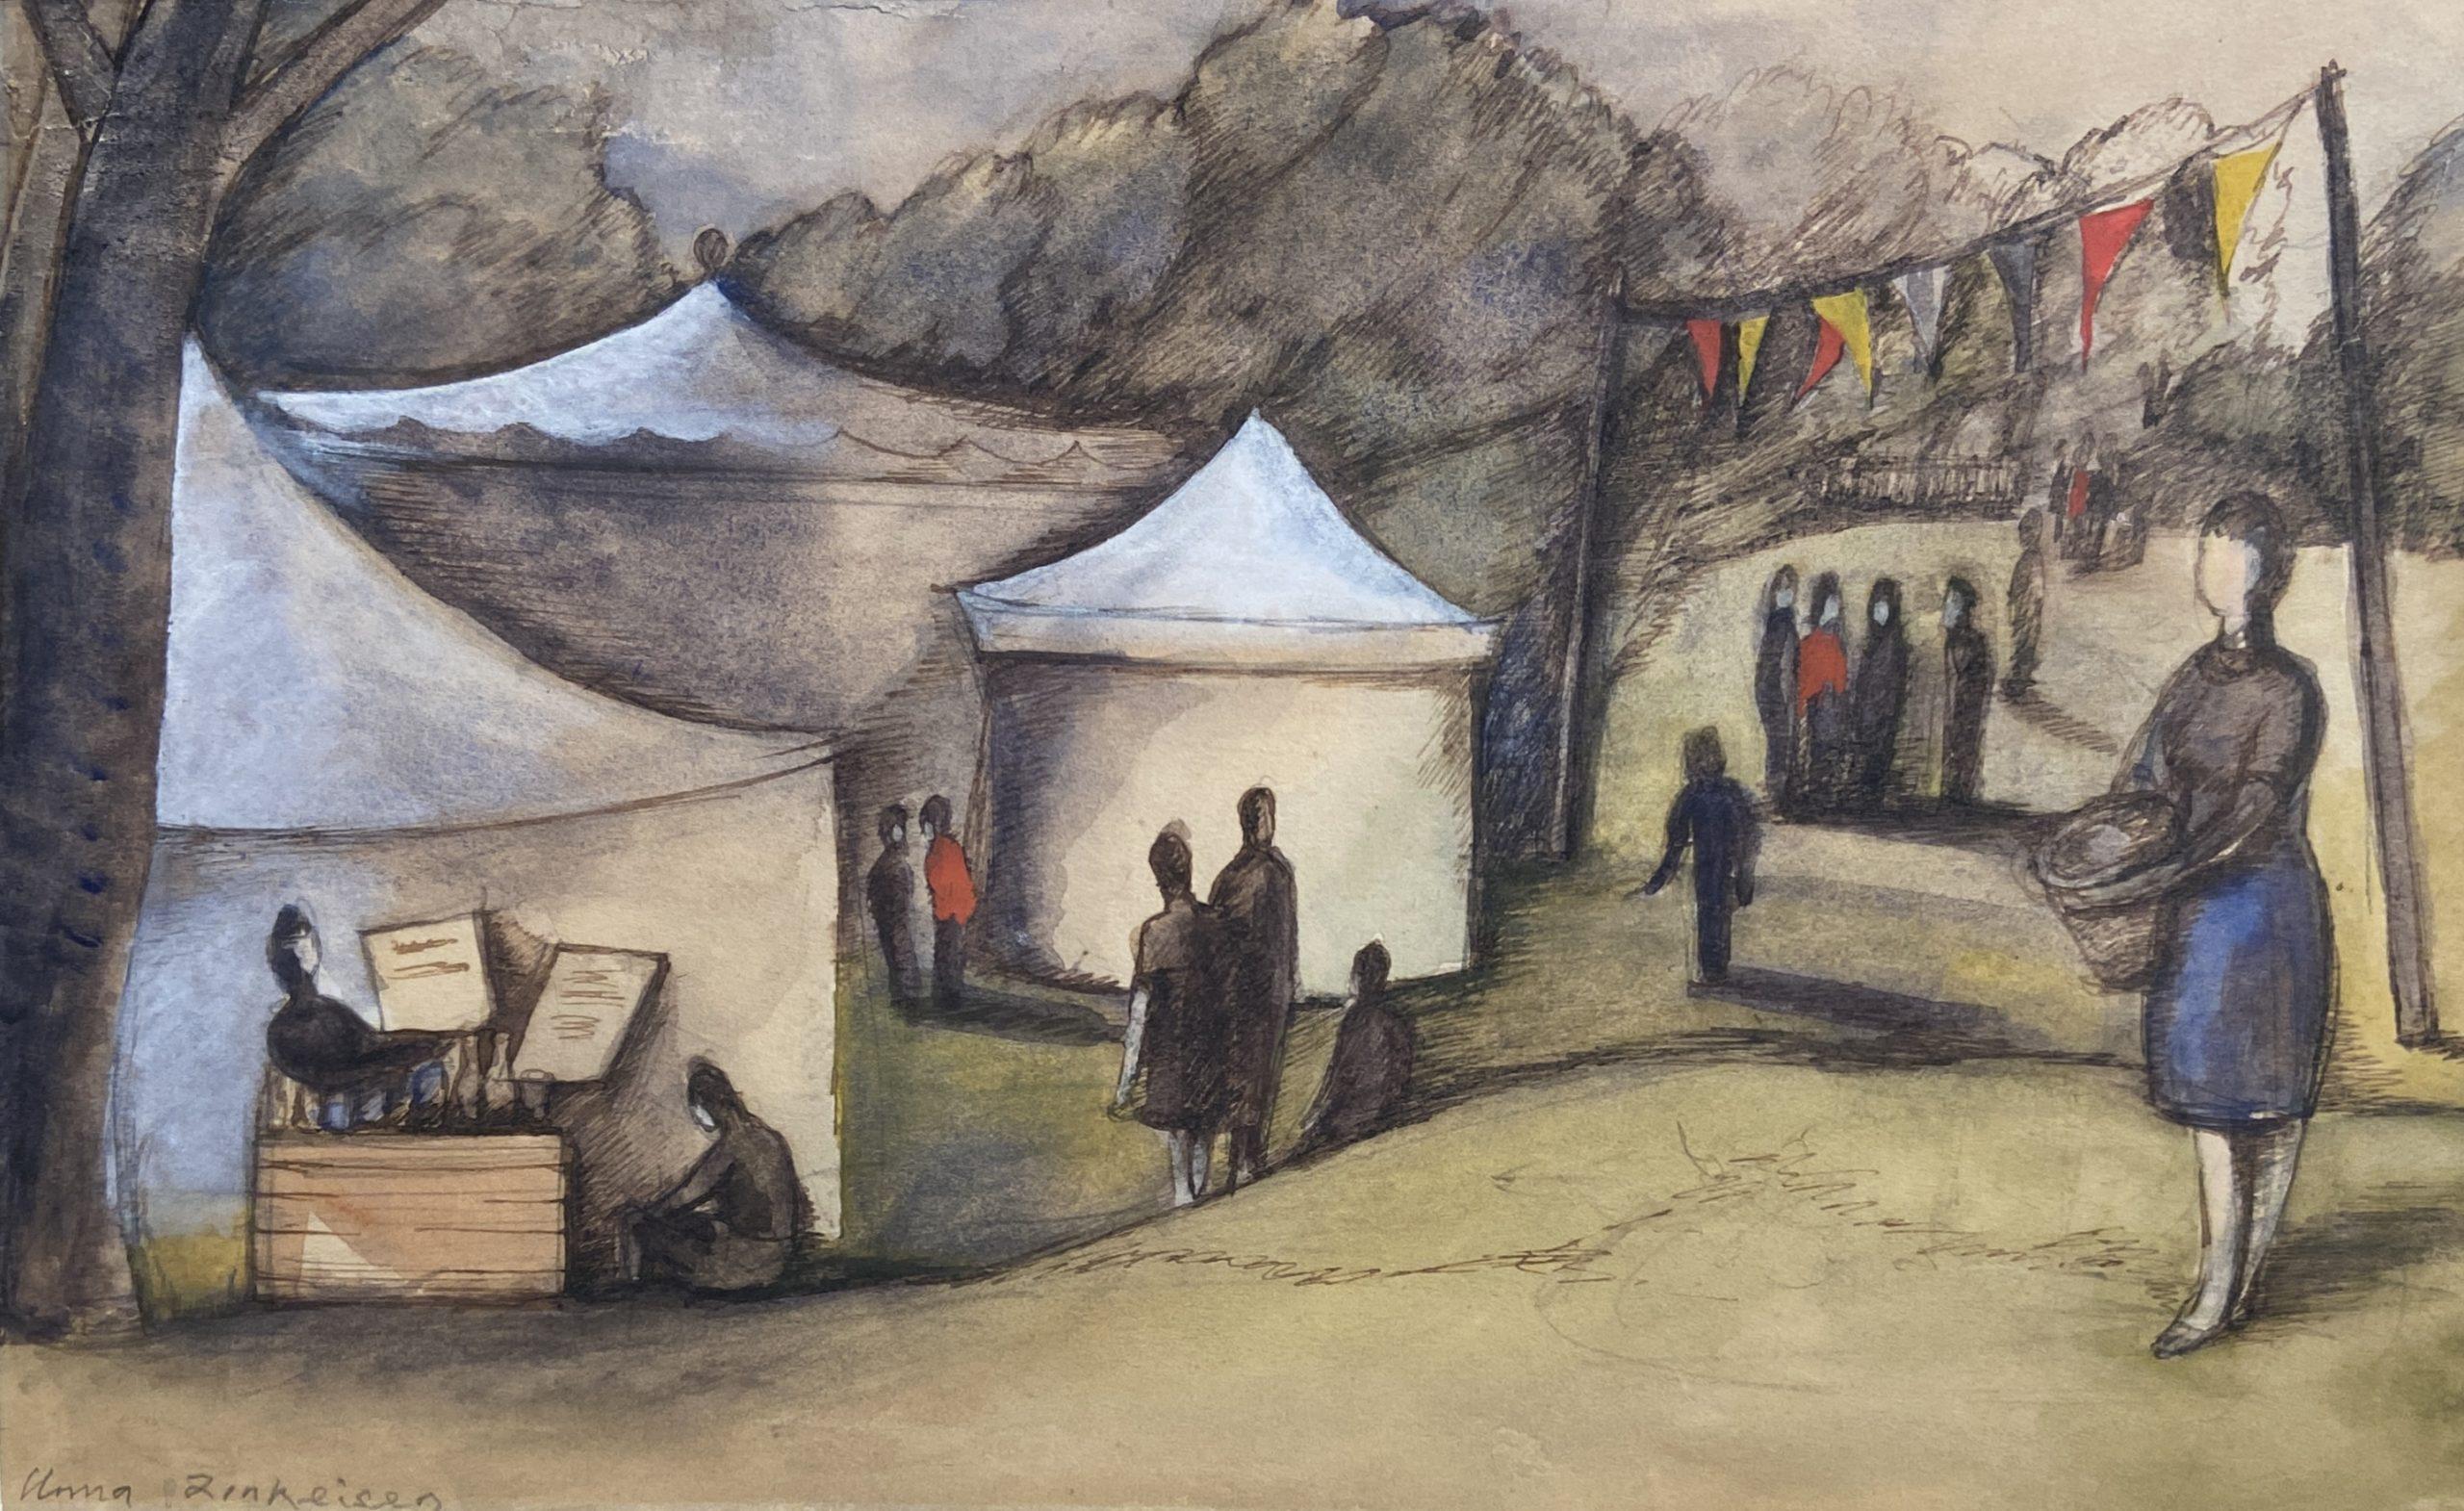 Anna Zinkeisen Landscape Art - The Village Fete, Signed Watercolour 20th Century British Female Artist